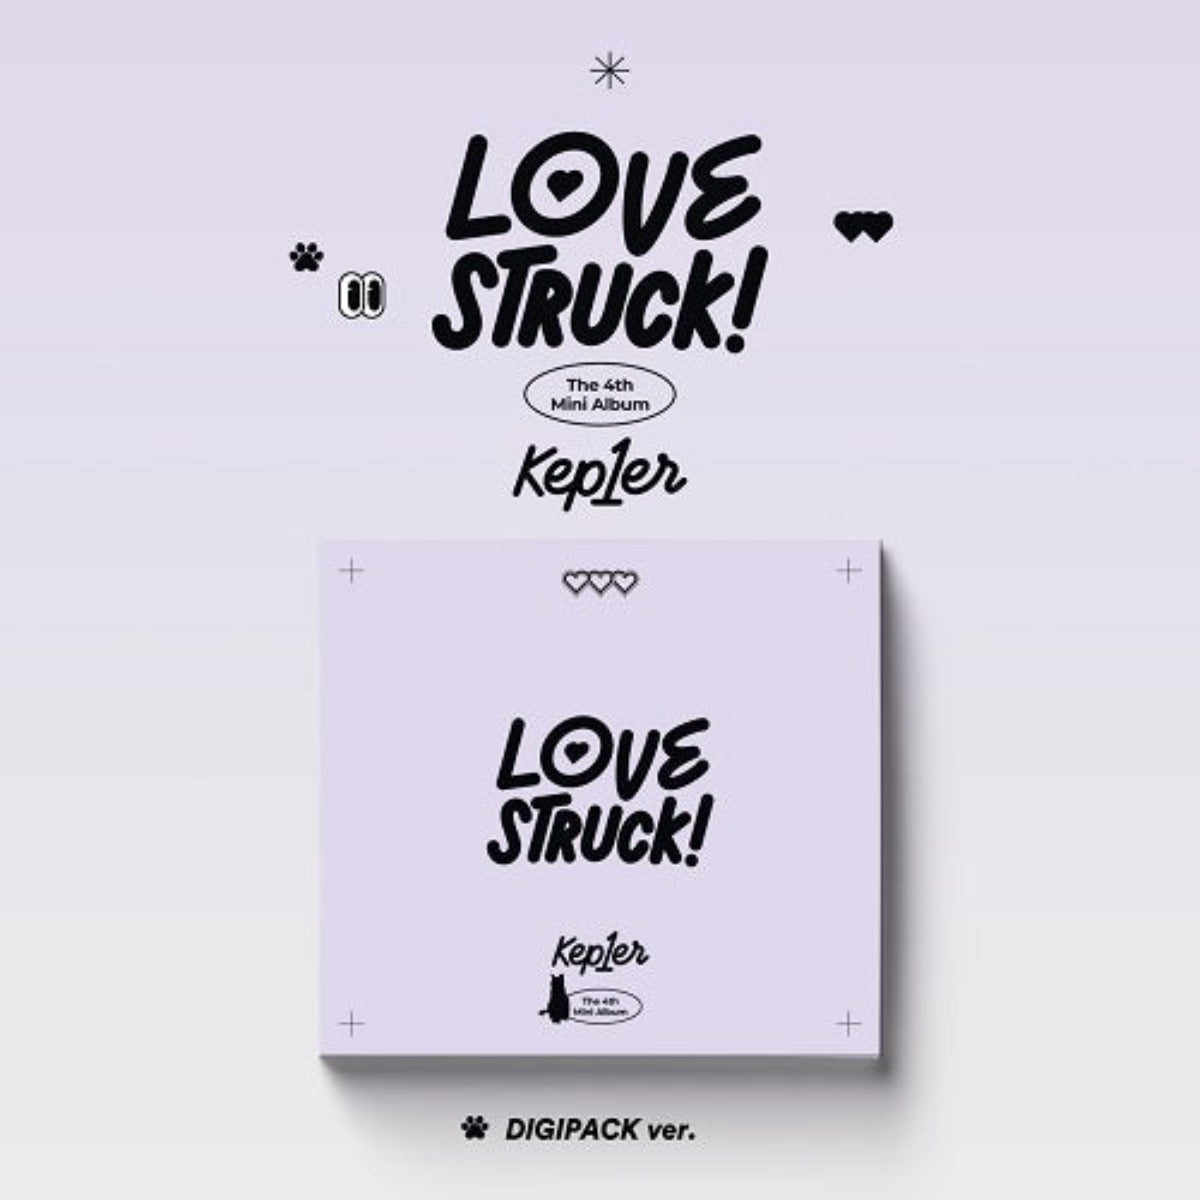 Kep1er Mini Album Vol. 4 - LOVESTRUCK! (Digipack Version)